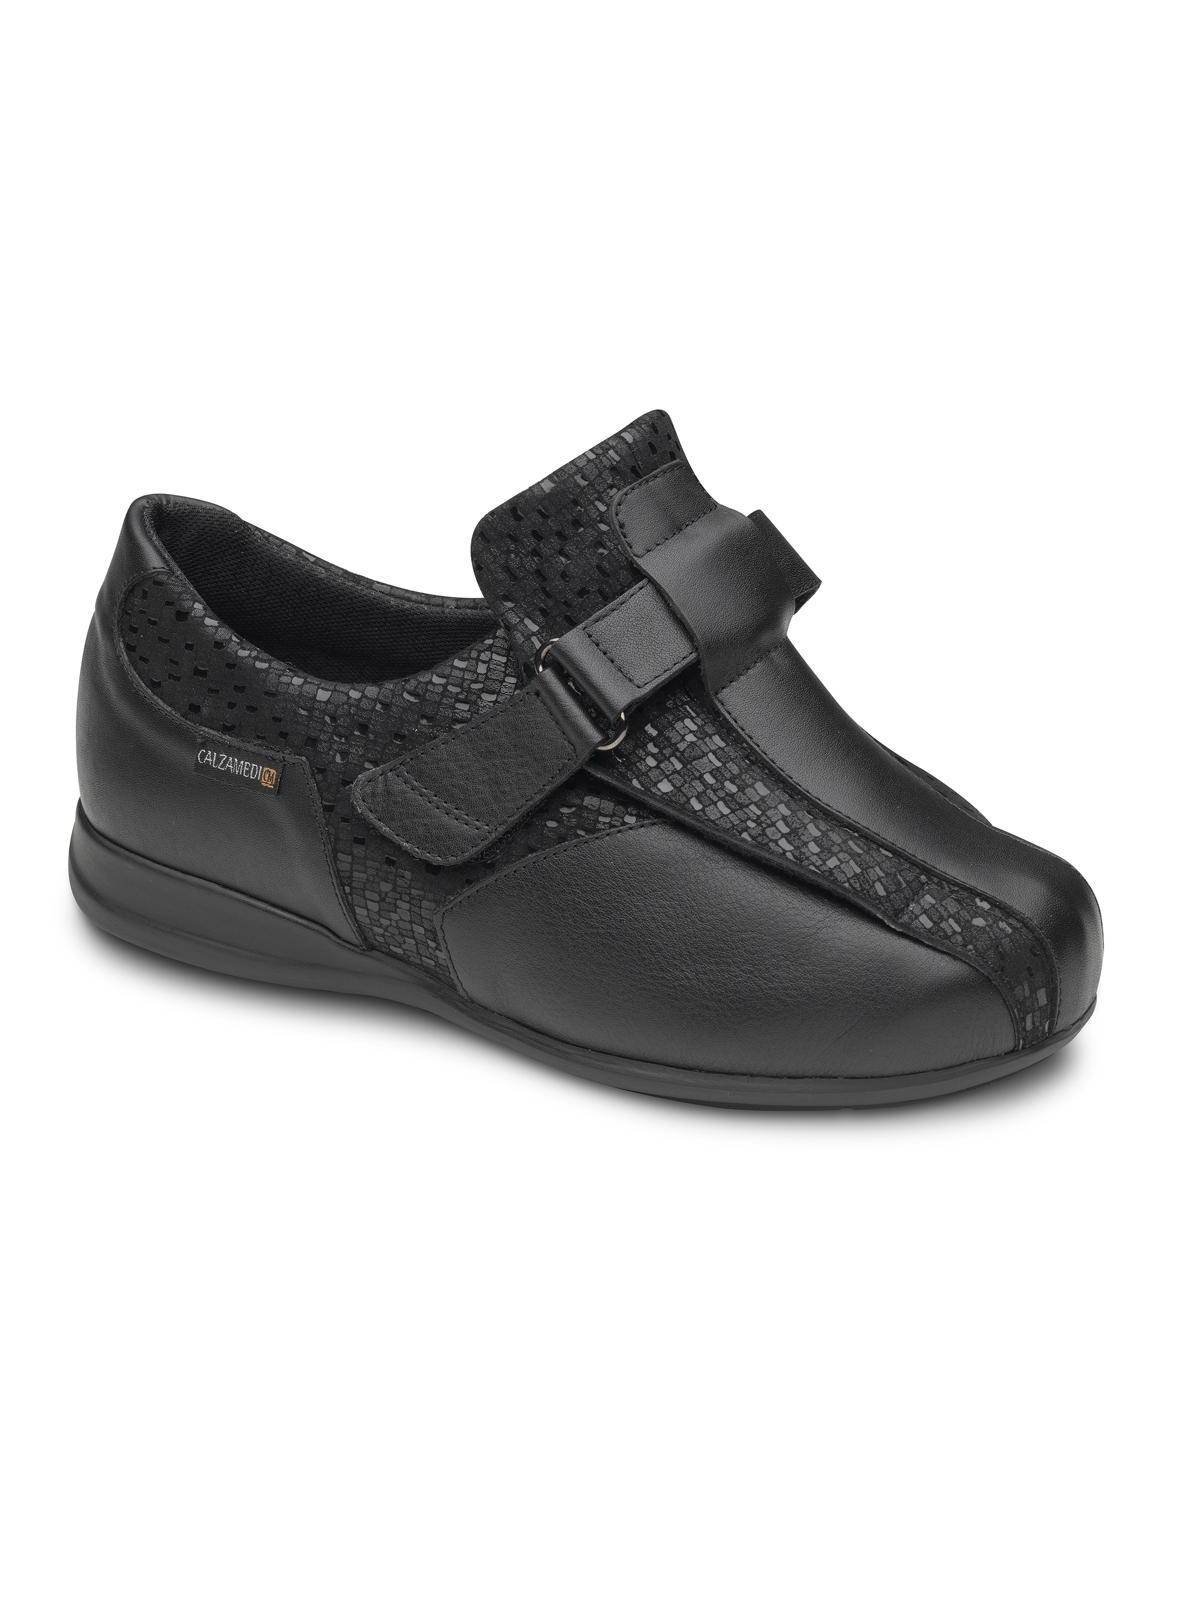 Zapato Calzamedi 0720 Negro